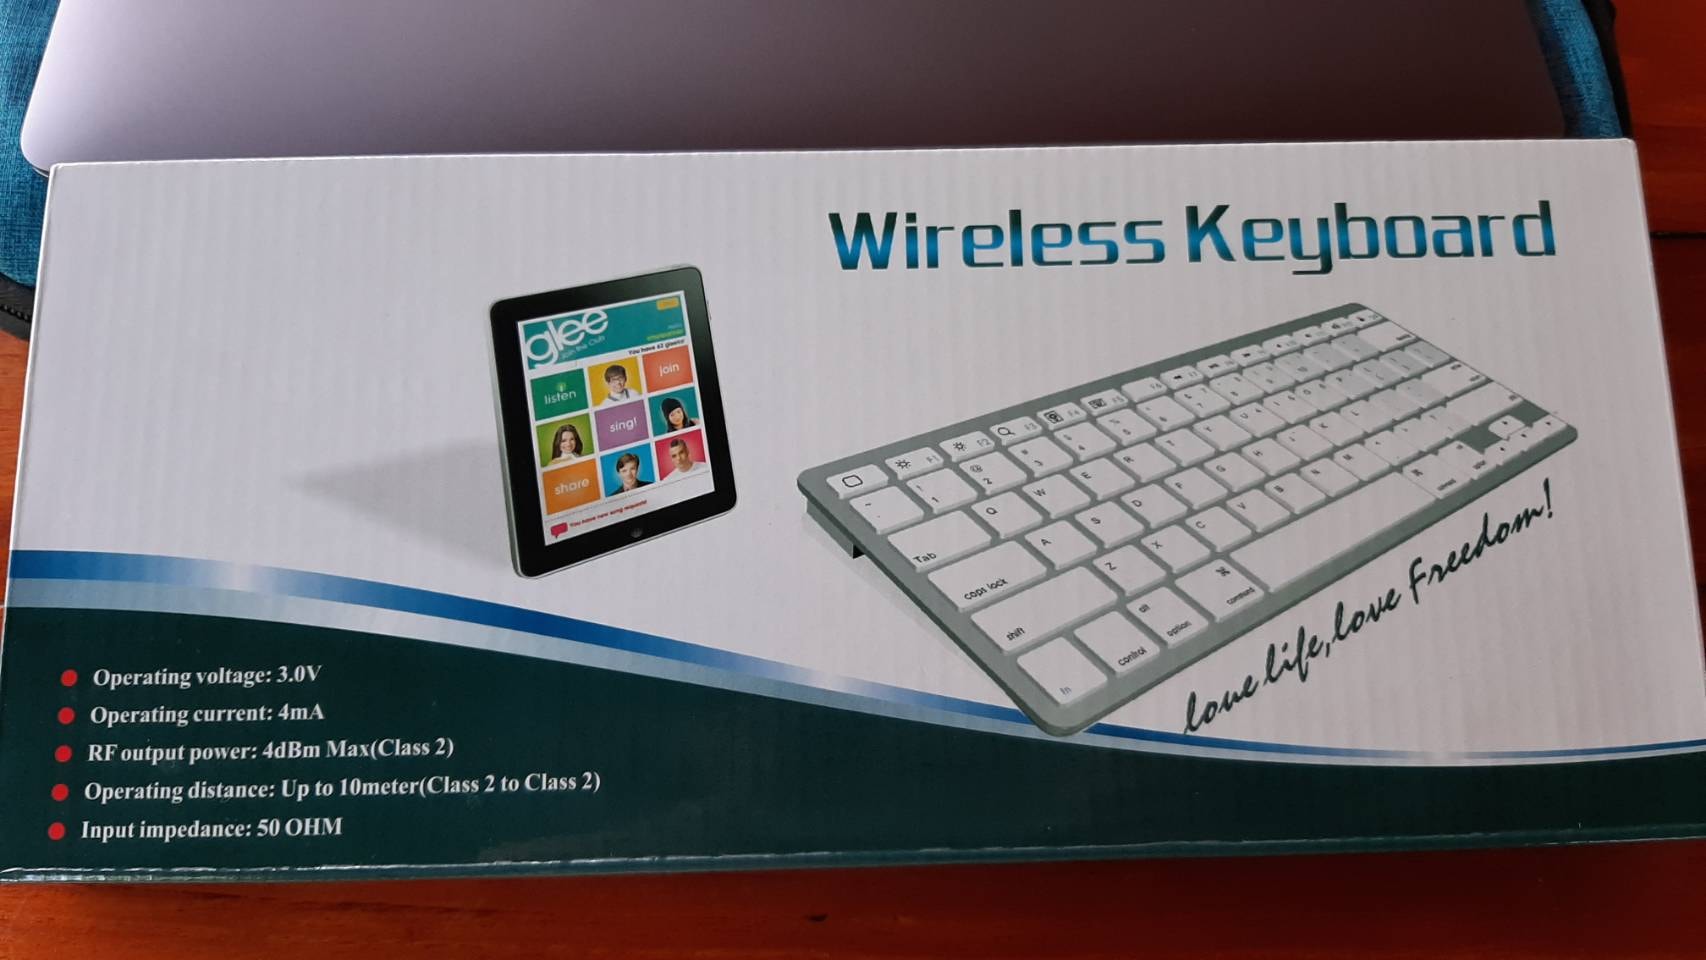 Macbook Keyboard wireless ไทย อังกฤษ เชื่อมต่อบูลทูธ ไร้สาย 